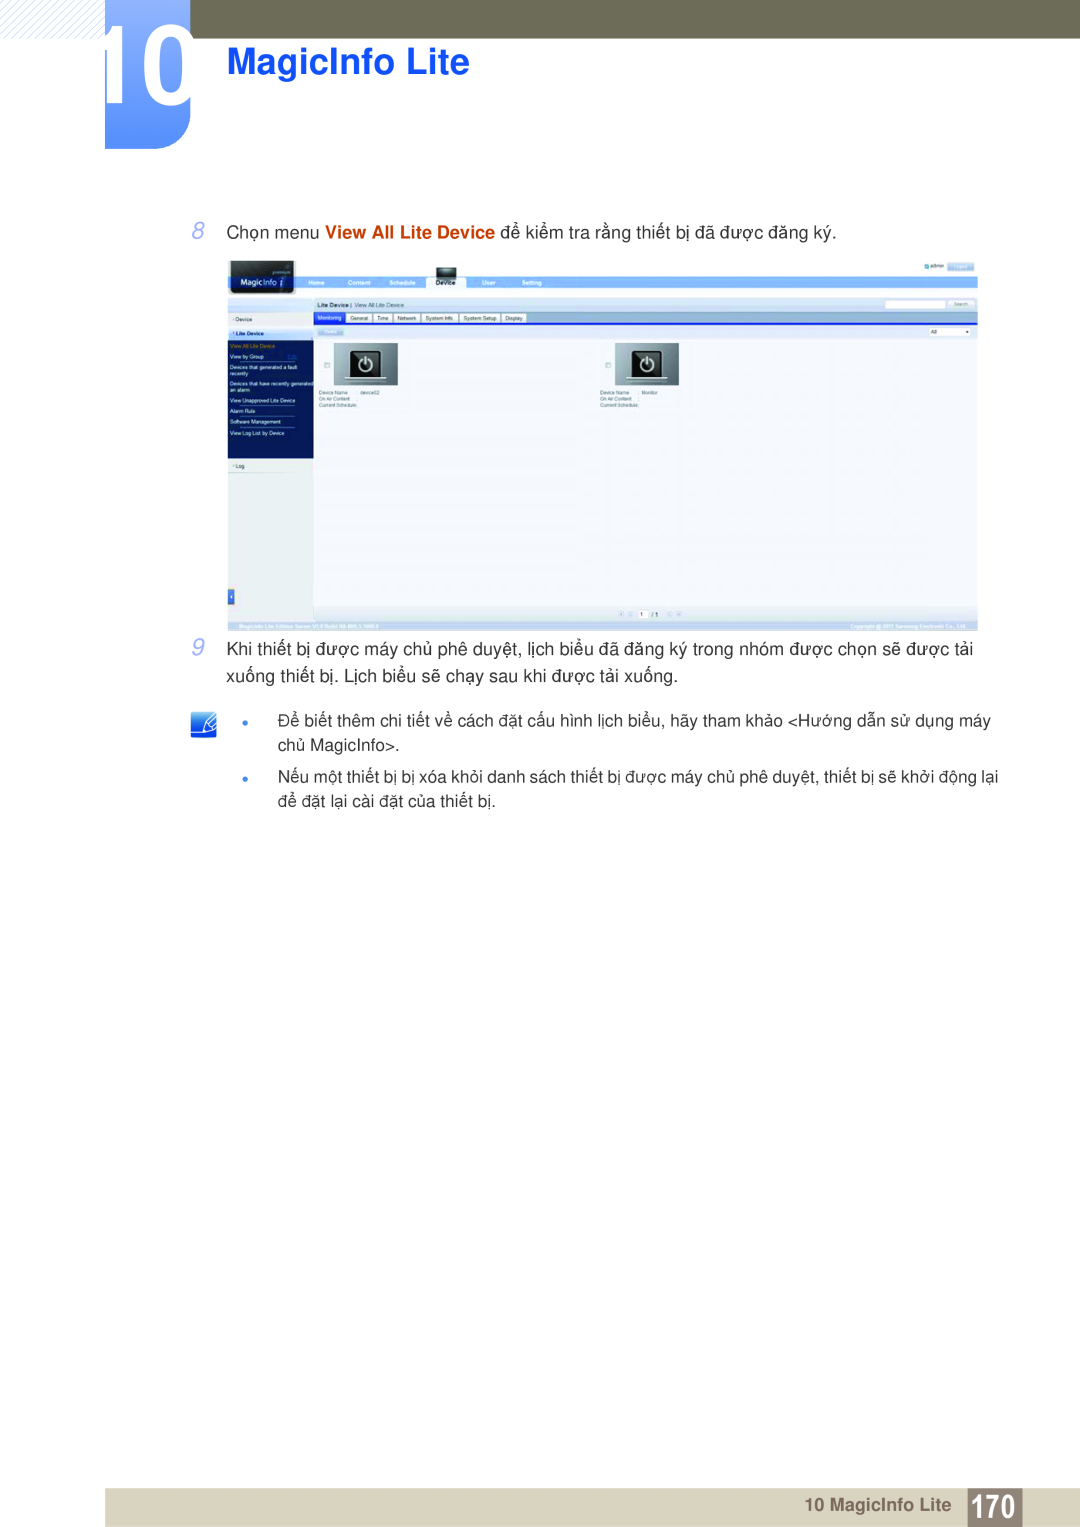 Samsung LH40MEPLGC/XY manual MagicInfo Lite, 8 Chọn menu View All Lite Device để kiểm tra rằng thiết bị đã được đăng ký 